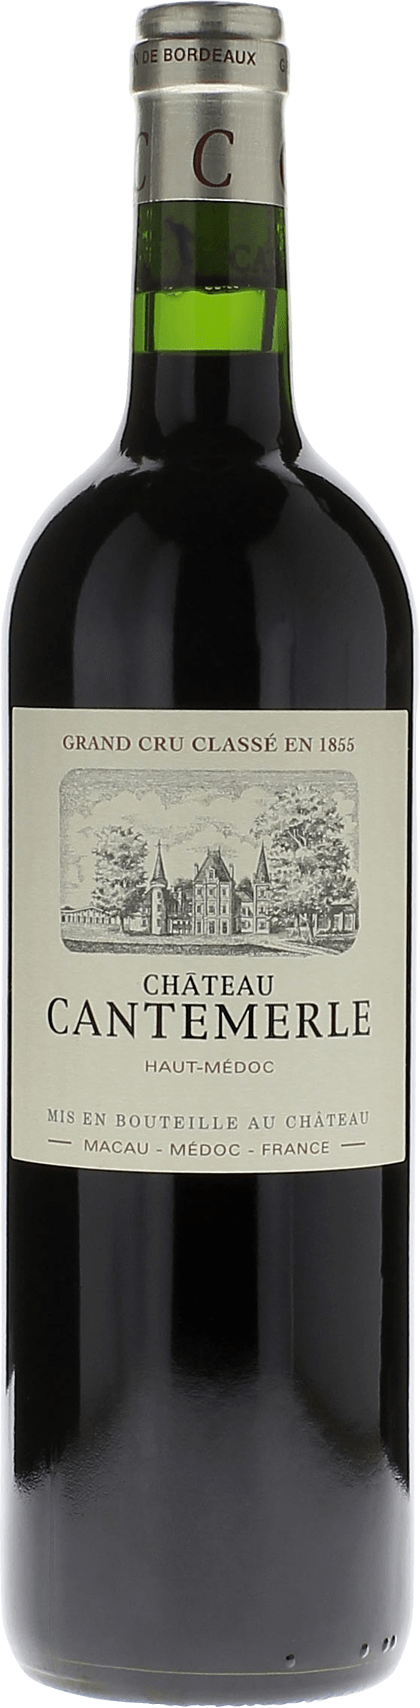 Cantemerle 2019 5me Grand cru class Haut-Mdoc, Bordeaux rouge